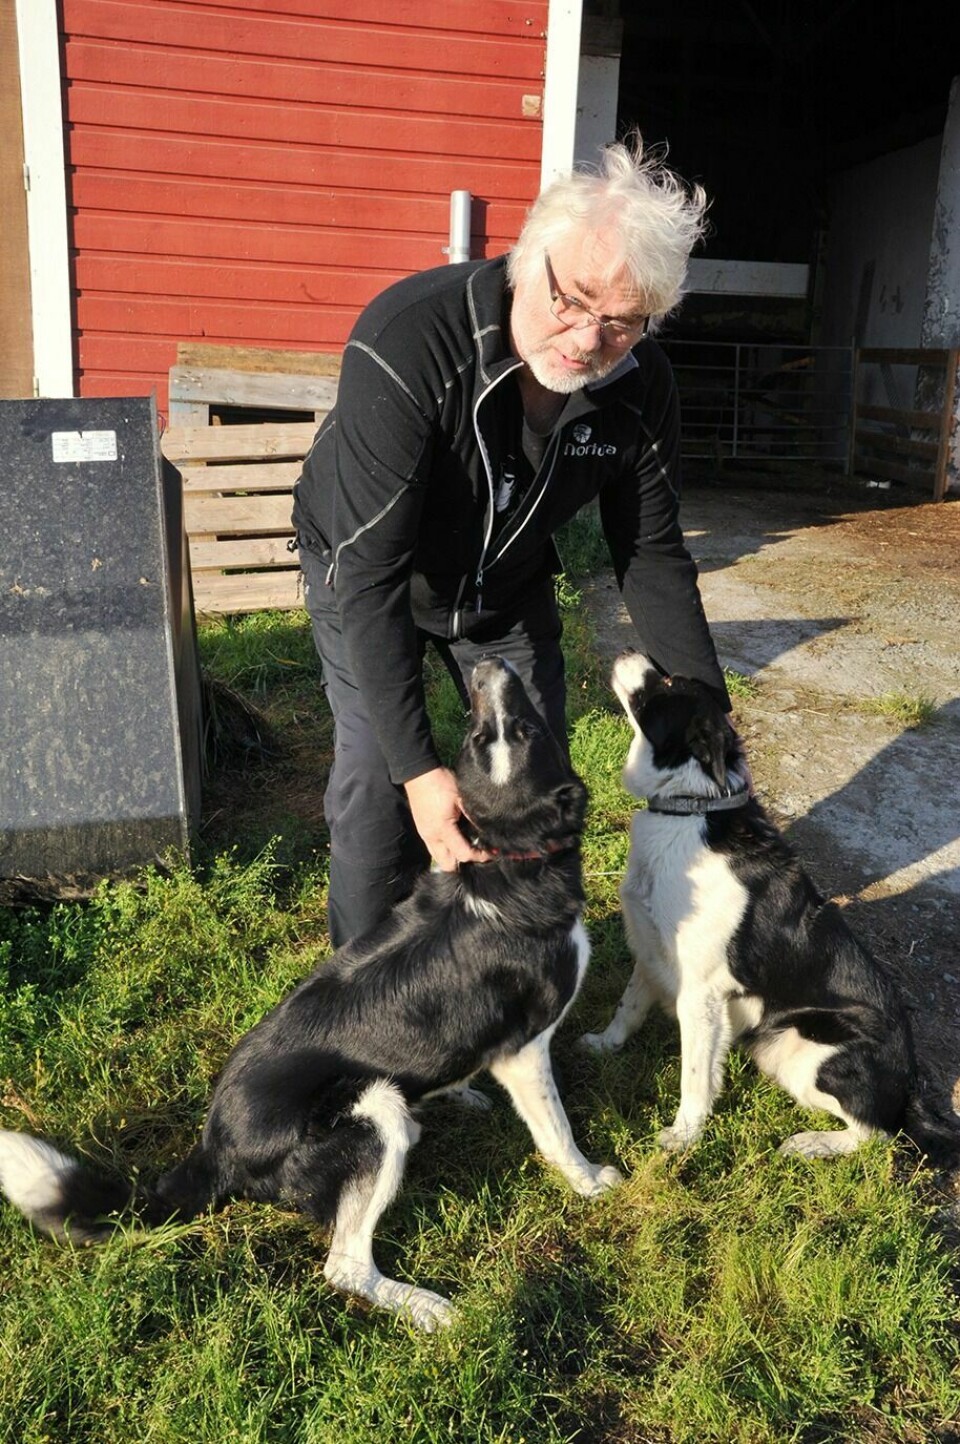 PÅ GÅRDEN: Sauebonde Lars Ivar Fause ber dem som skal ferdes i marka, om å gi beskjed til nærmeste bonde dersom de møter på sau. Foto: Sol Gabrielle Larsen